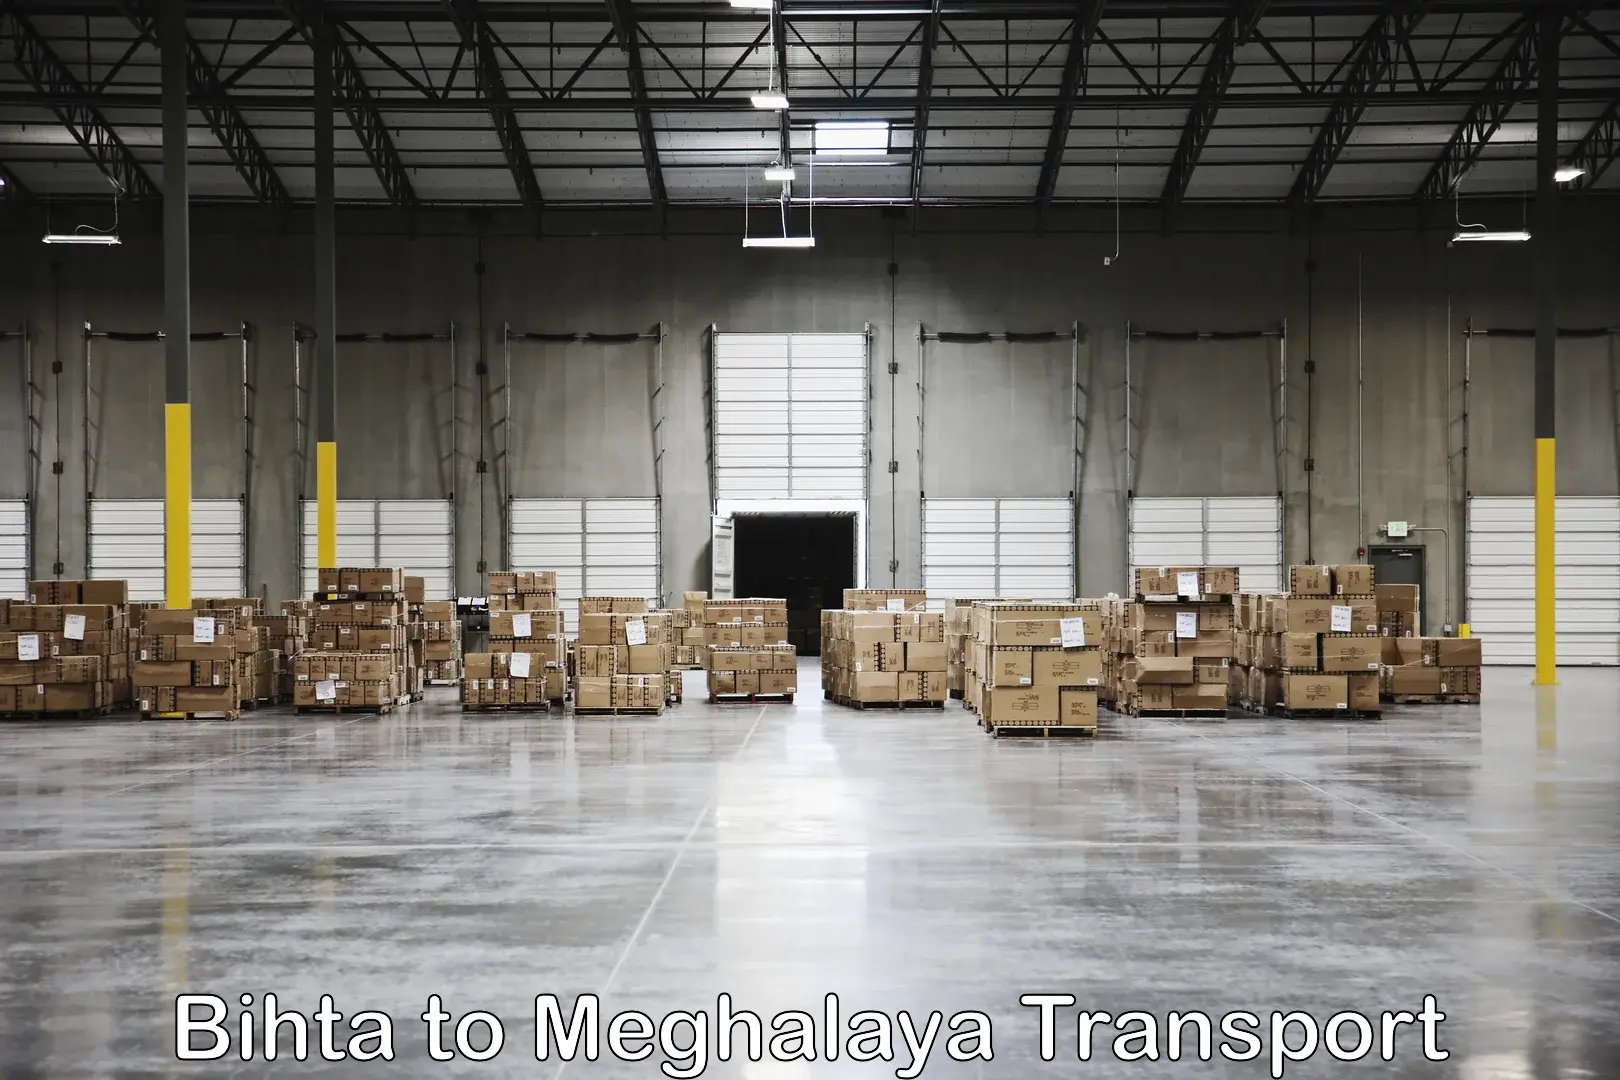 Land transport services Bihta to NIT Meghalaya